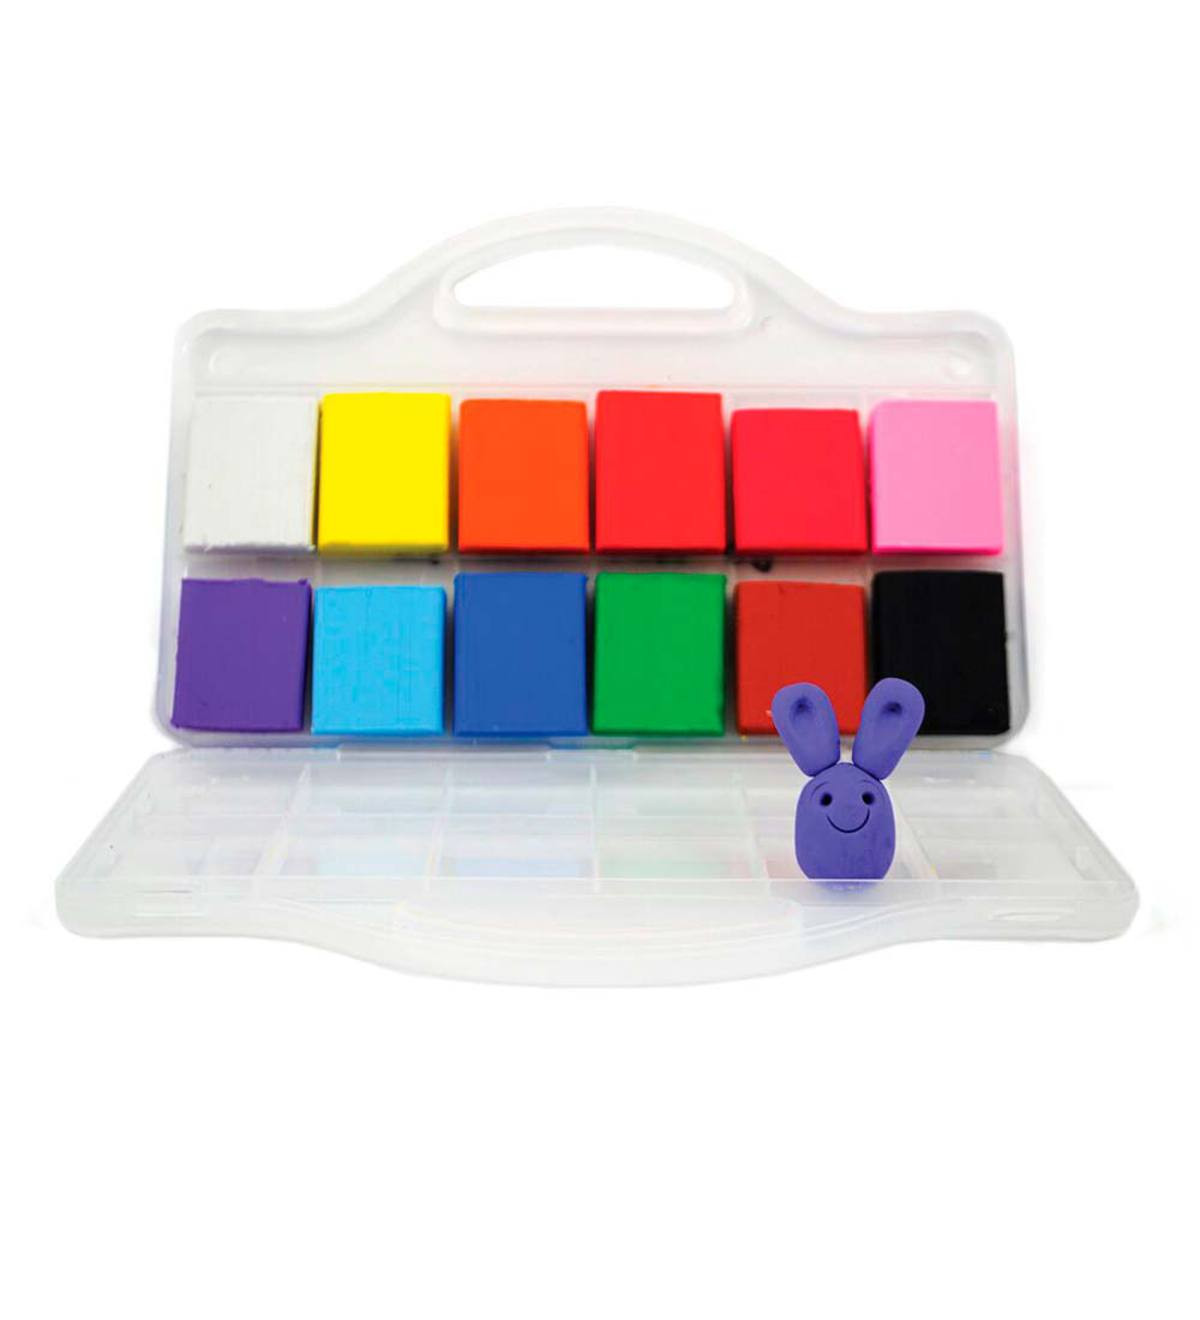 Best ideas about Creatibles DIY Eraser Kit
. Save or Pin Creatibles DIY Eraser Kit Ages 3 to 5 Ages Now.